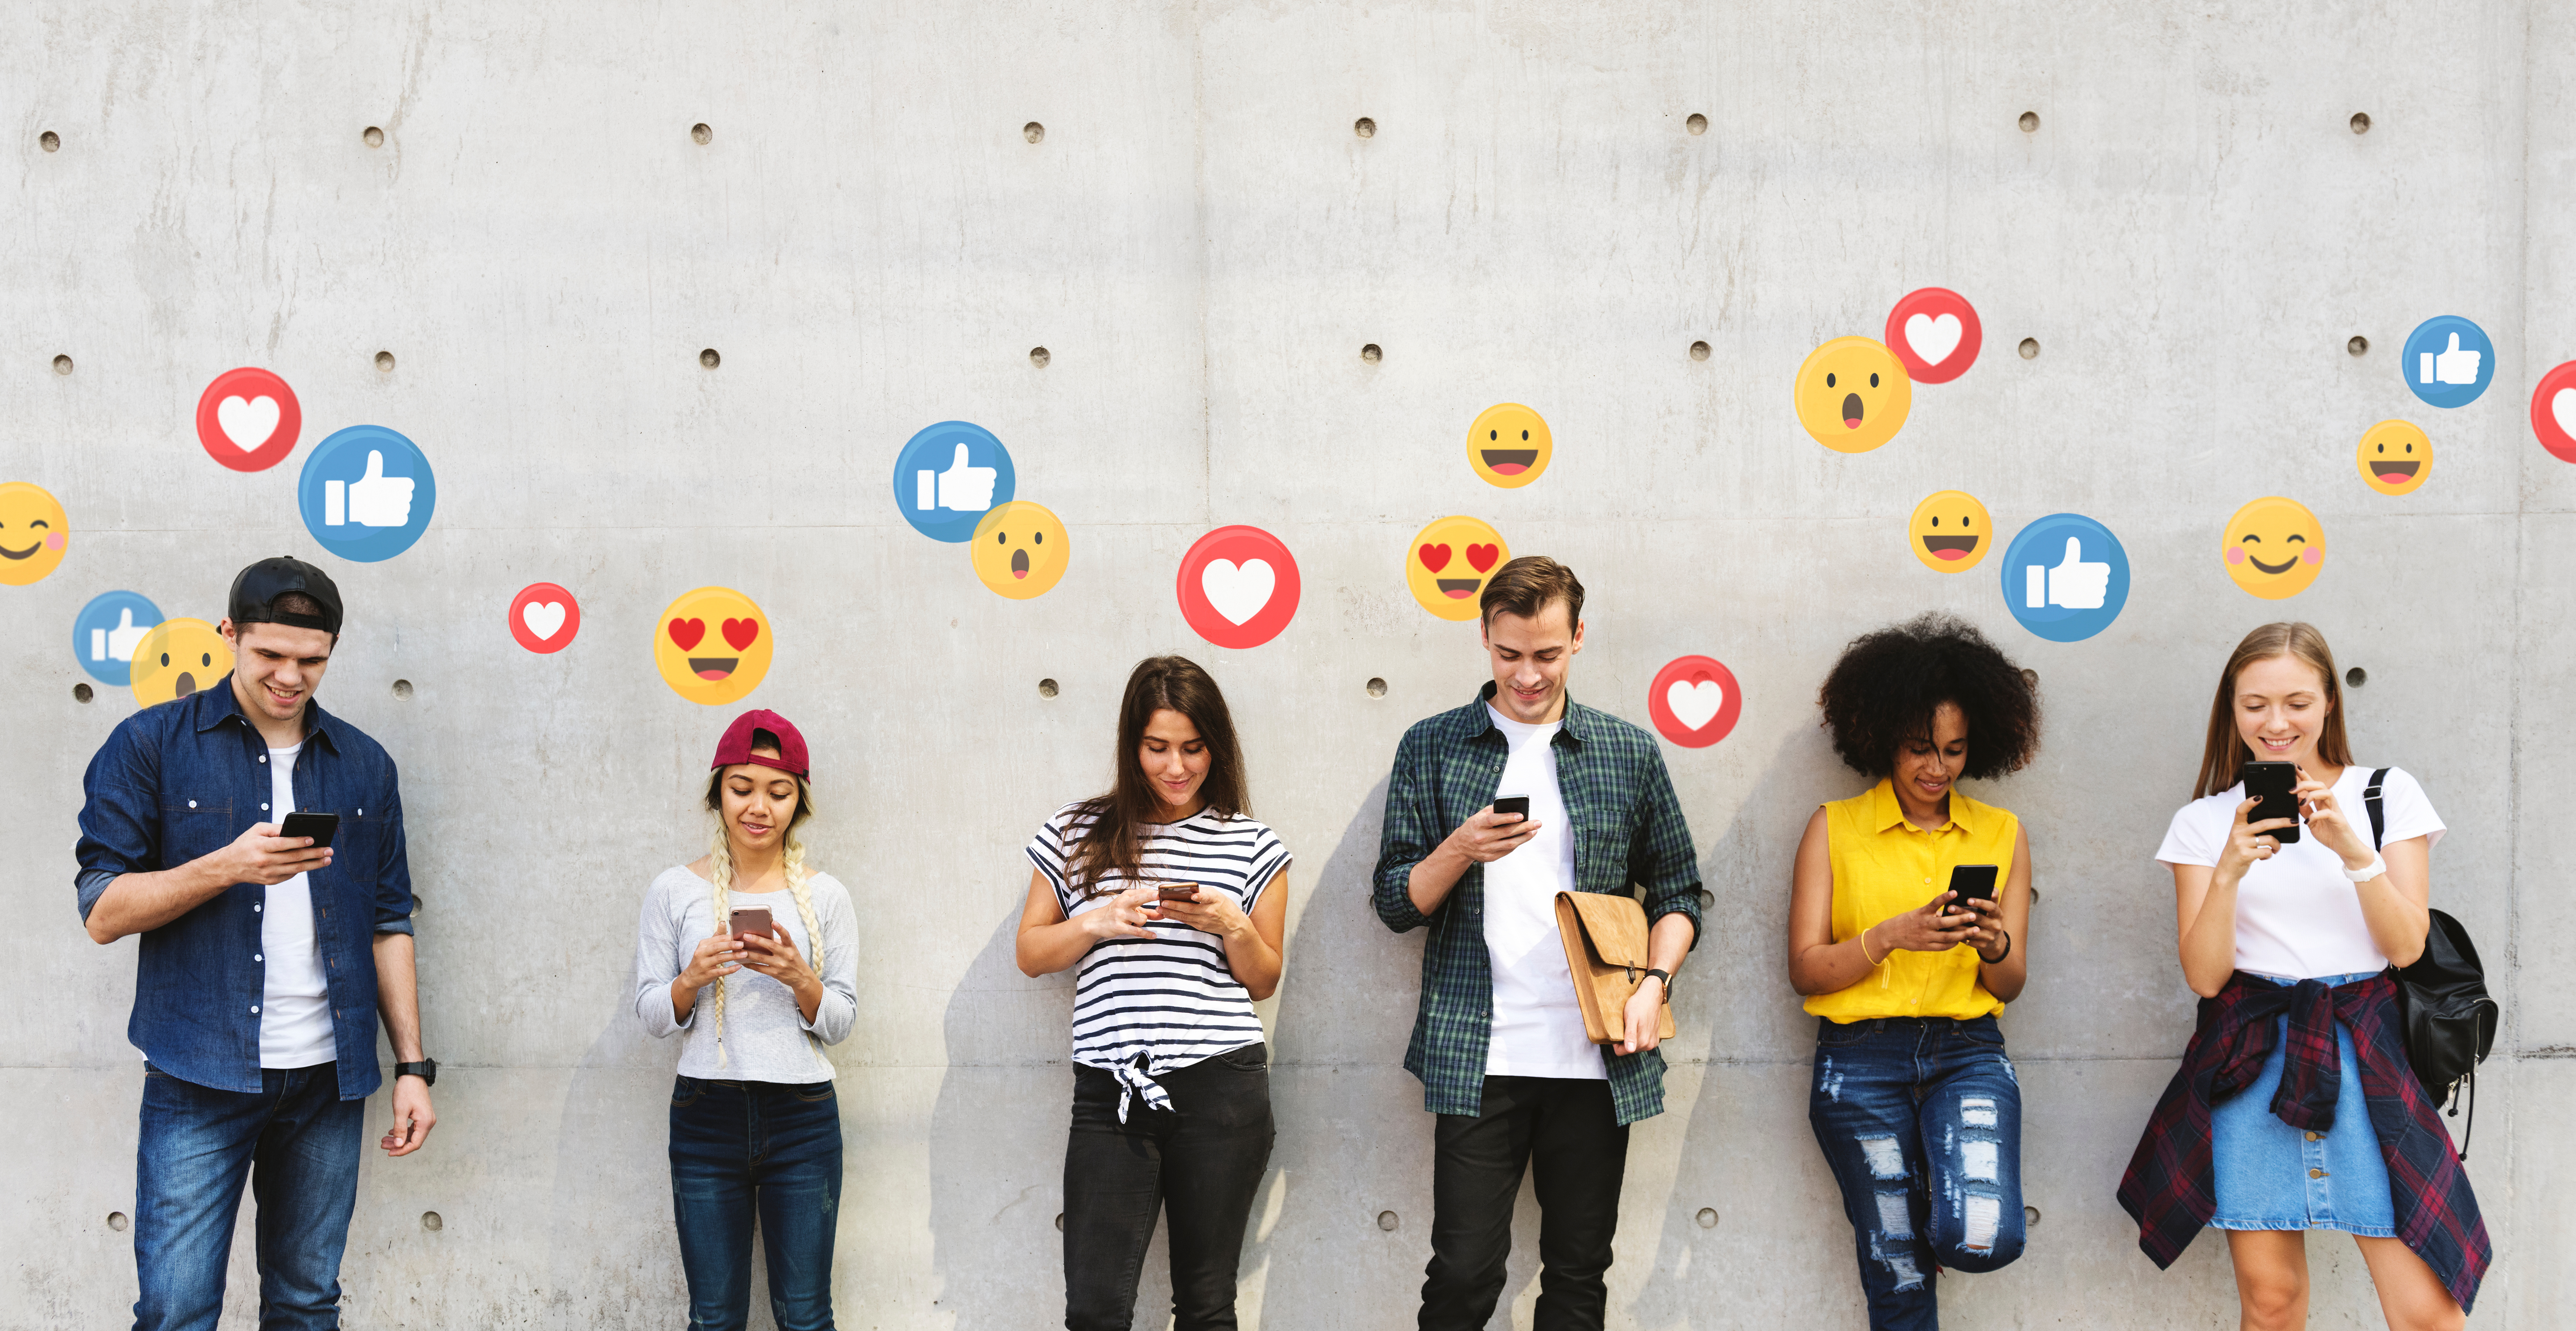 6 junge Menschen stehen vor einer Mauer. Sie schauen auf ihre Handys. Über den Handys sind Social Media Icons wie Emojis, Herzen und Daumen hoch zusehen.